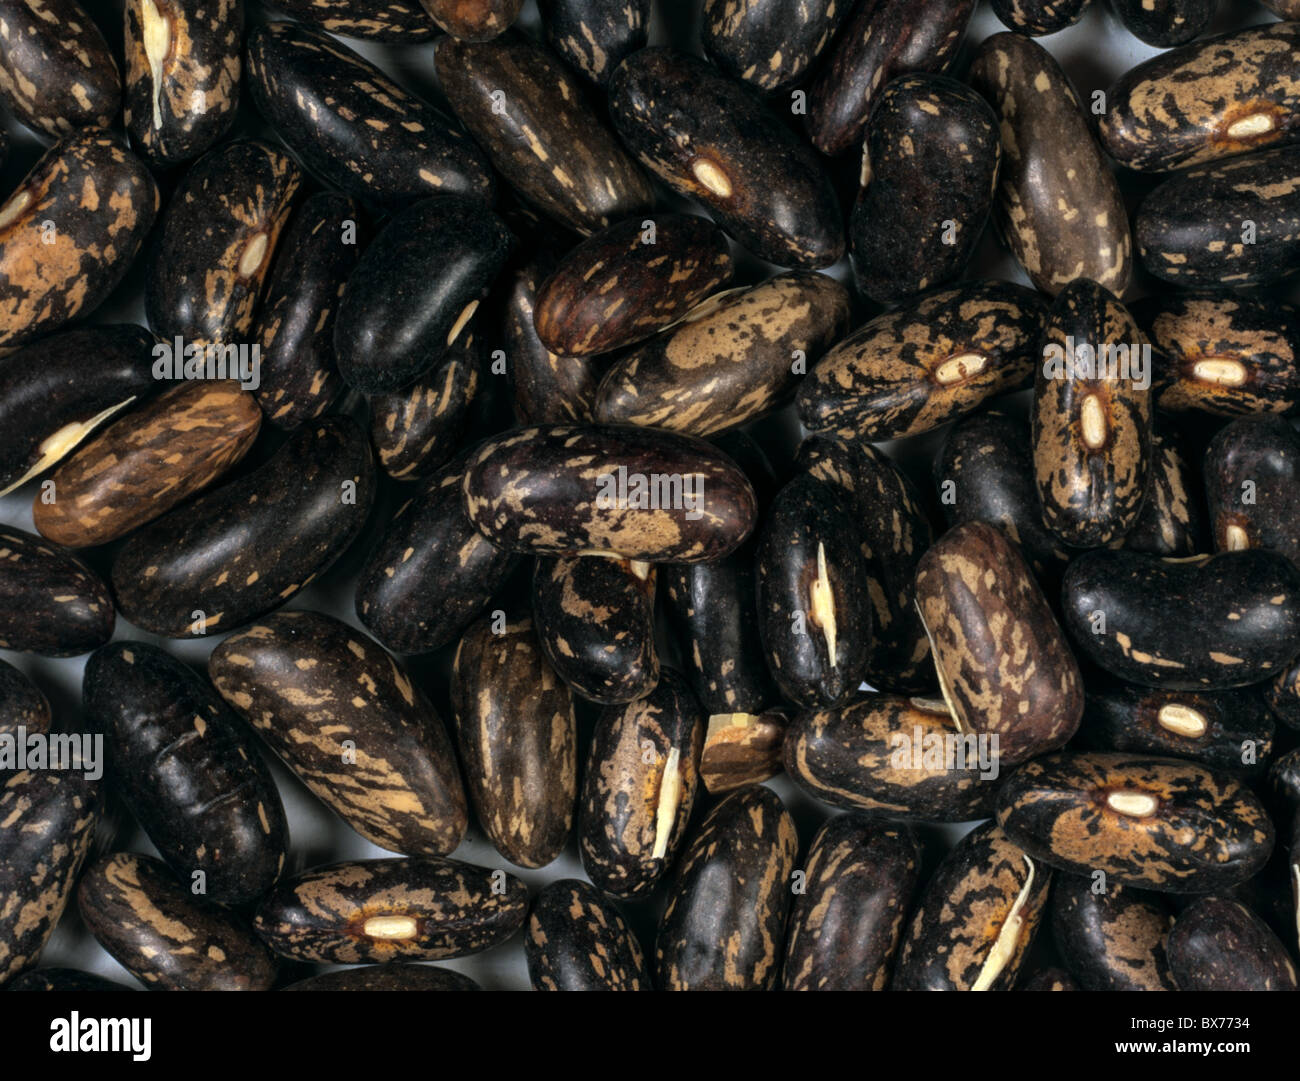 Enano de frijol (Phaseolus vulgaris) semillas Foto de stock